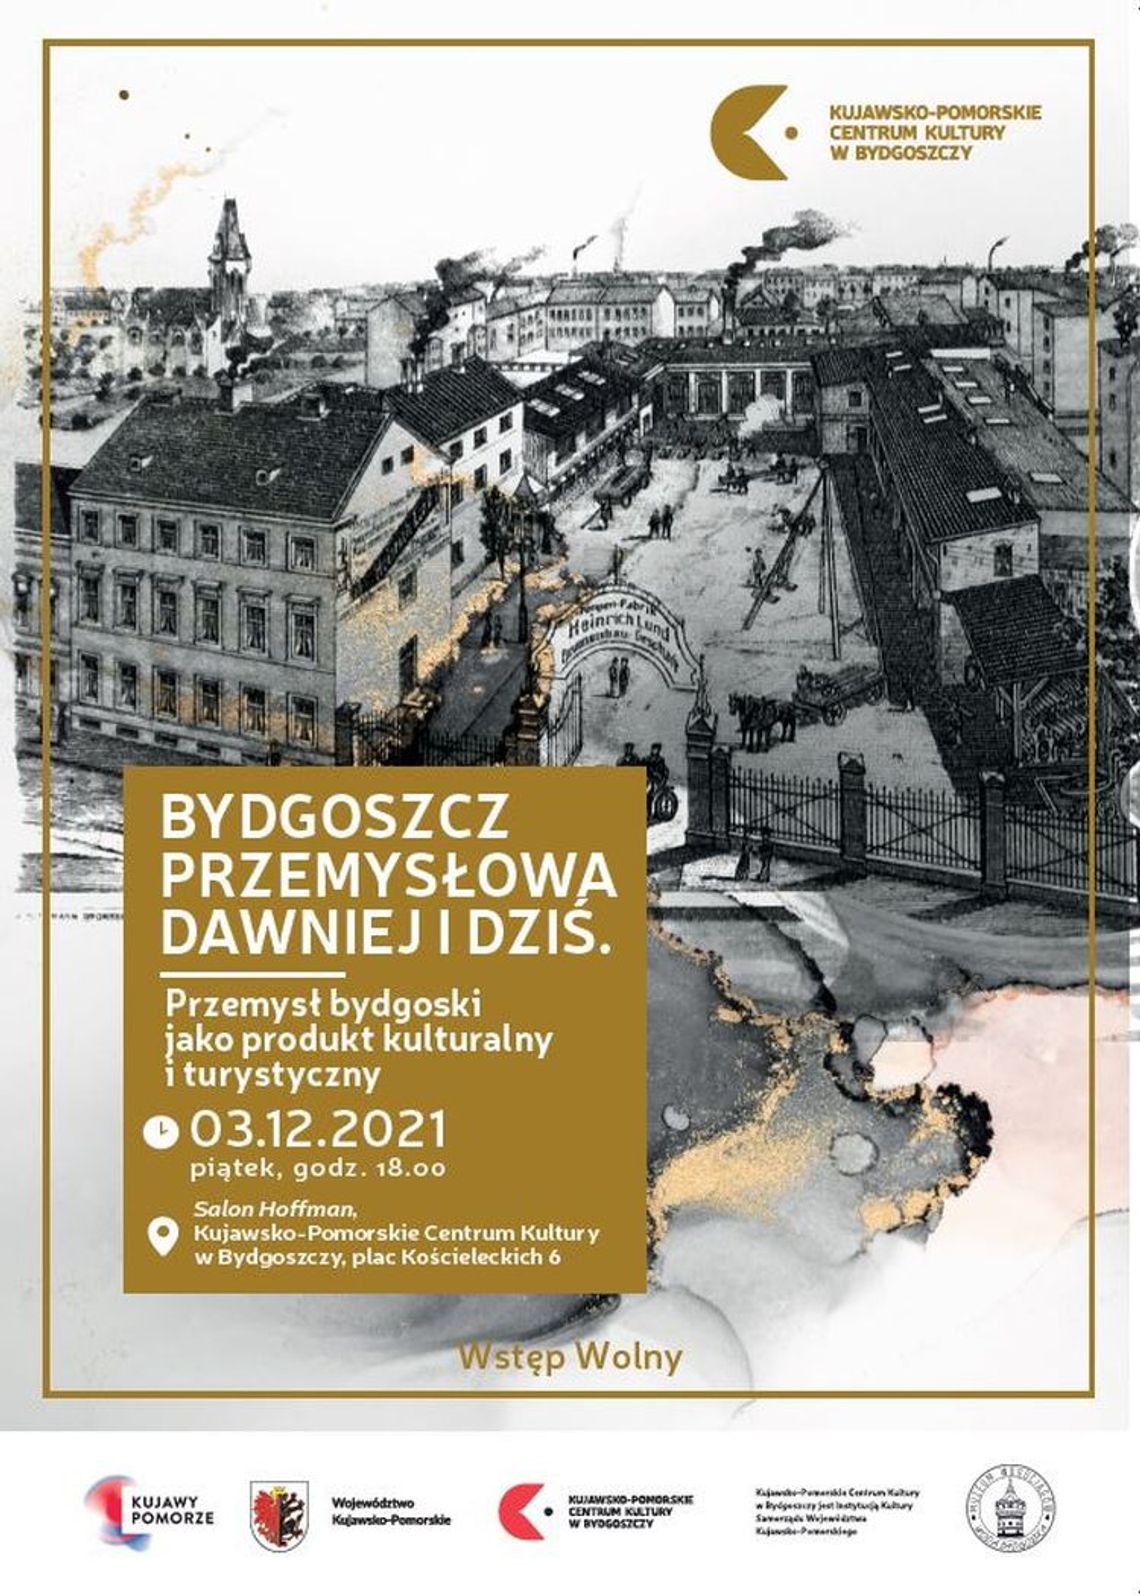 Spotkanie z autorami książki "Bydgoszcz przemysłowa dawniej i dziś..."